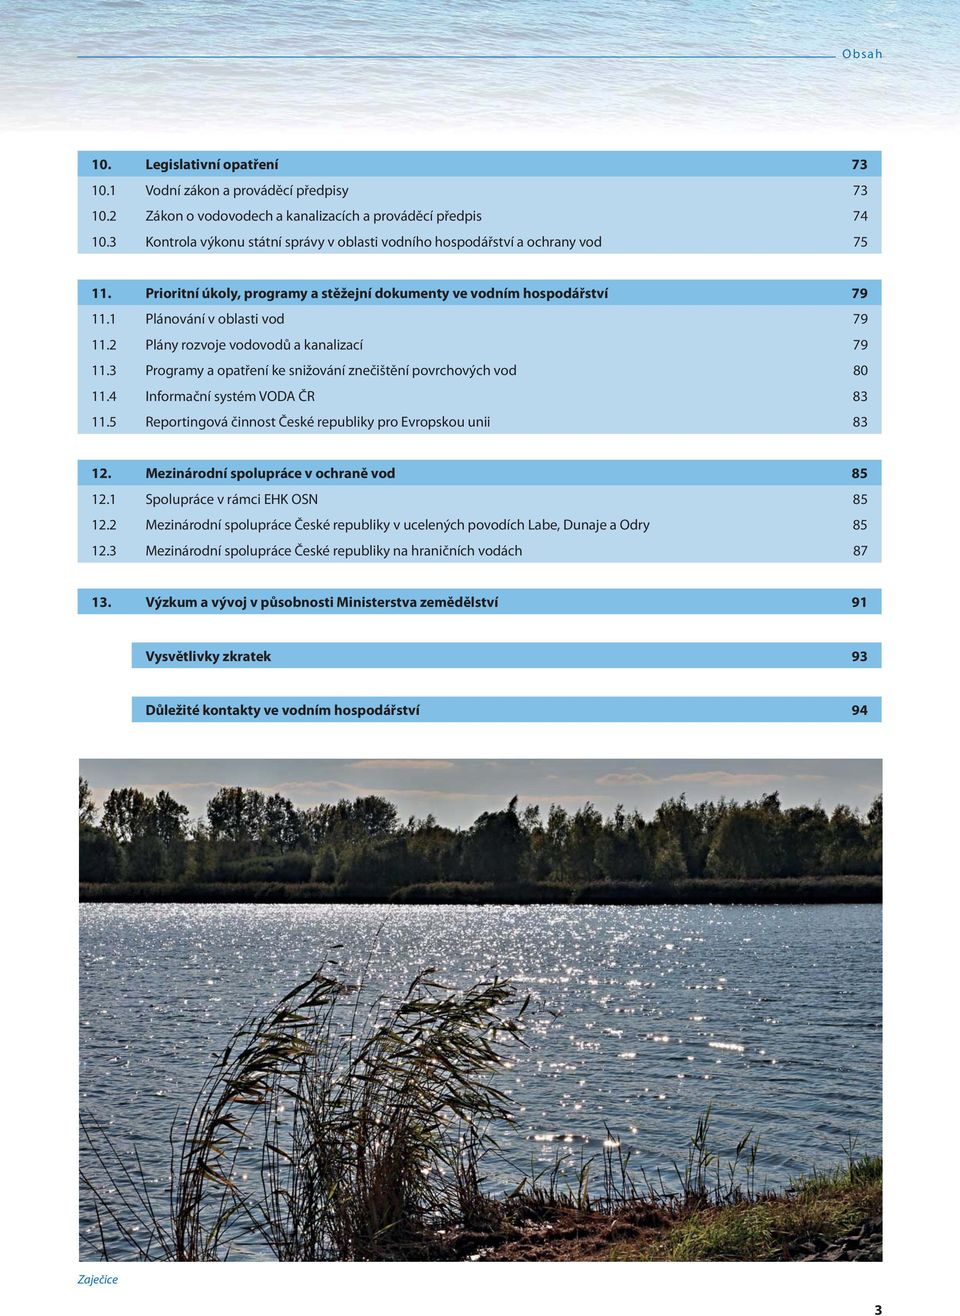 2 Plány rozvoje vodovodů a kanalizací 79 11.3 Programy a opatření ke snižování znečištění povrchových vod 80 11.4 Informační systém VODA ČR 83 11.